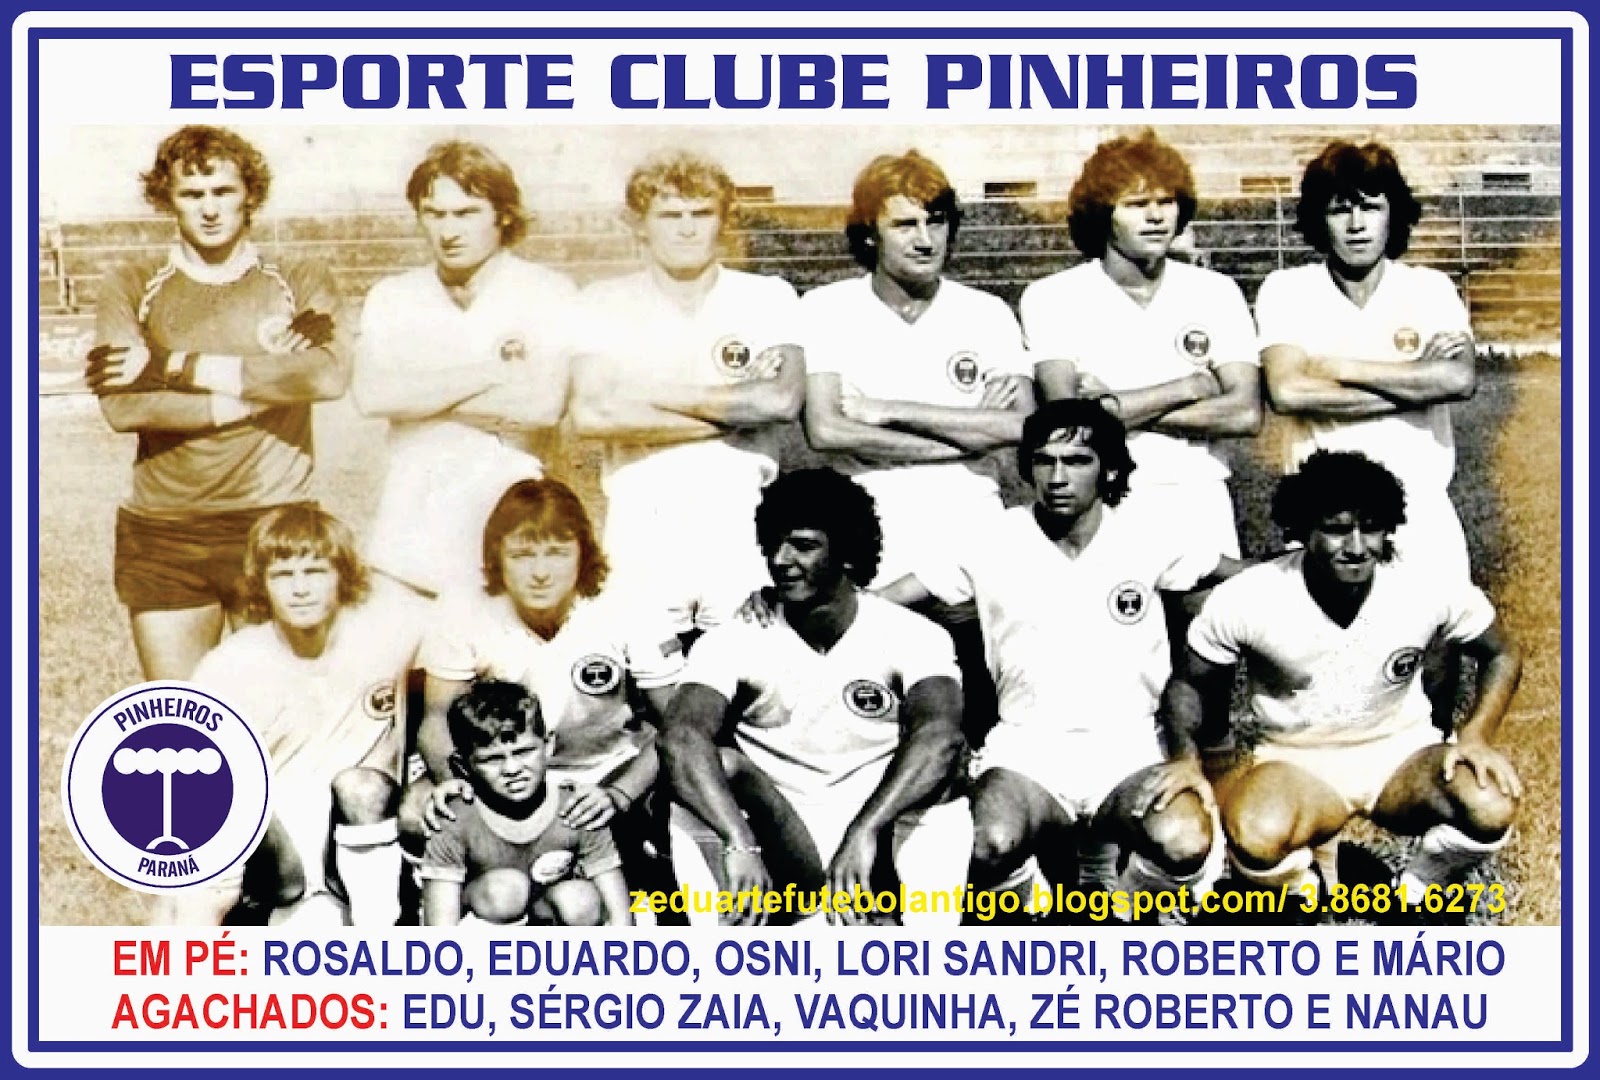 Revista n°189 JAN 2014 by Esporte Clube Pinheiros - Issuu